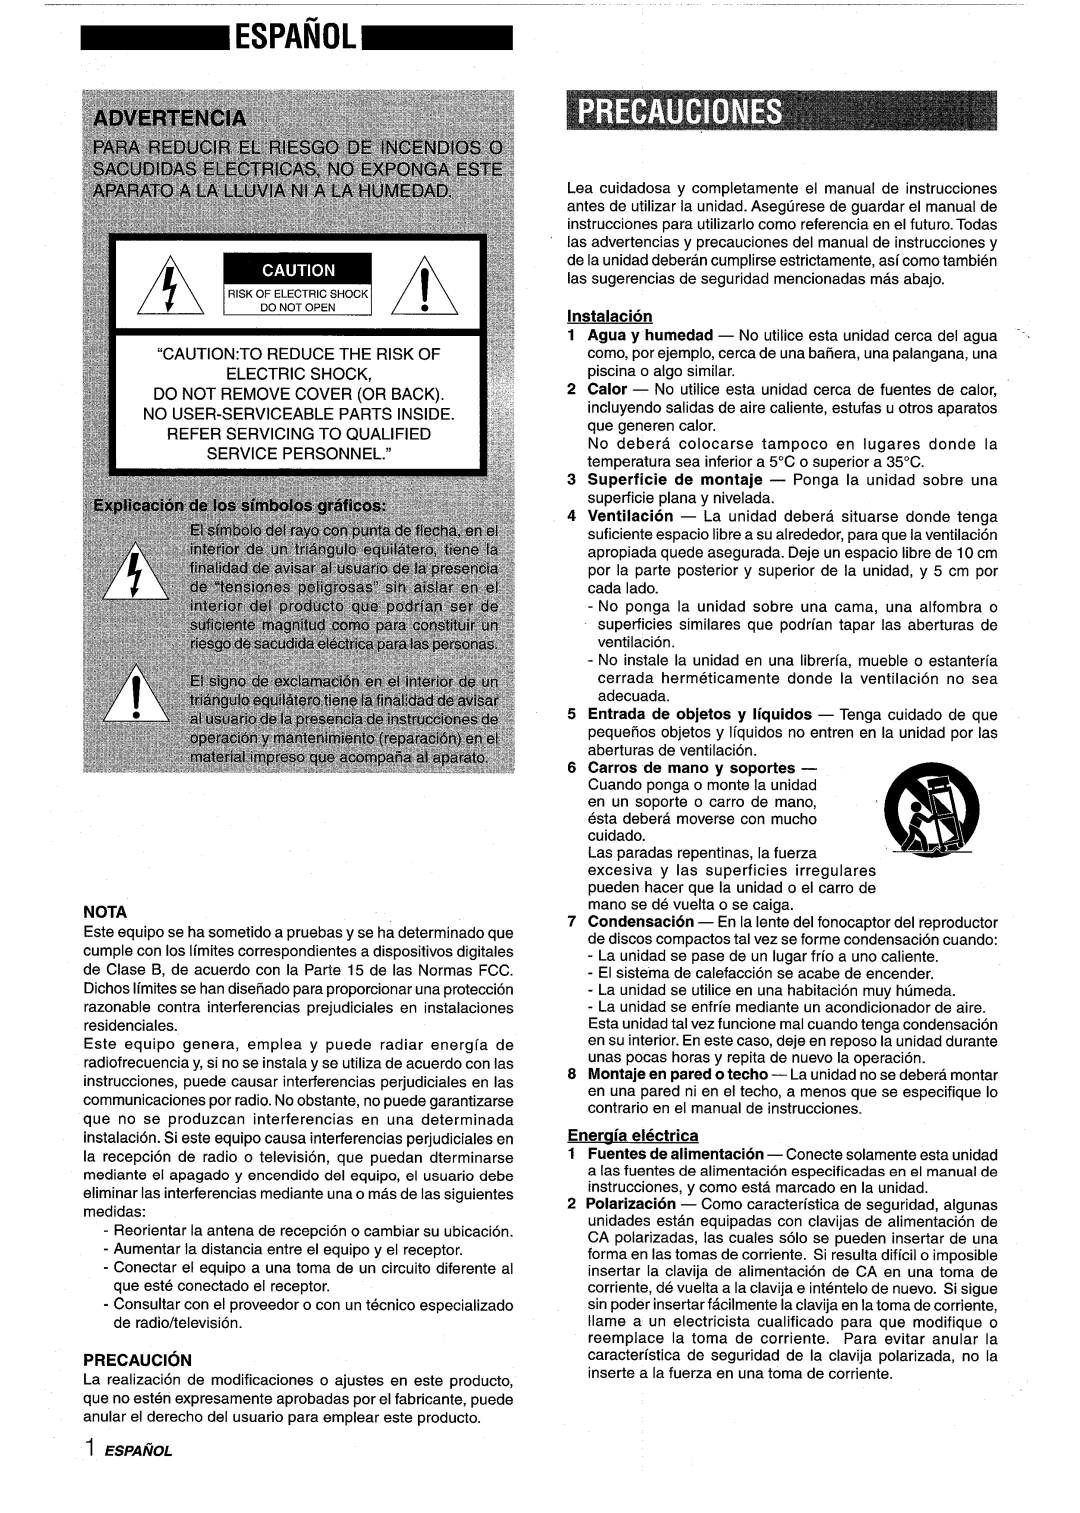 Sony NSX-A959 manual 1 ES/JAfiOL, Nota, Precaution, Instalacion, Eneraia electrica 